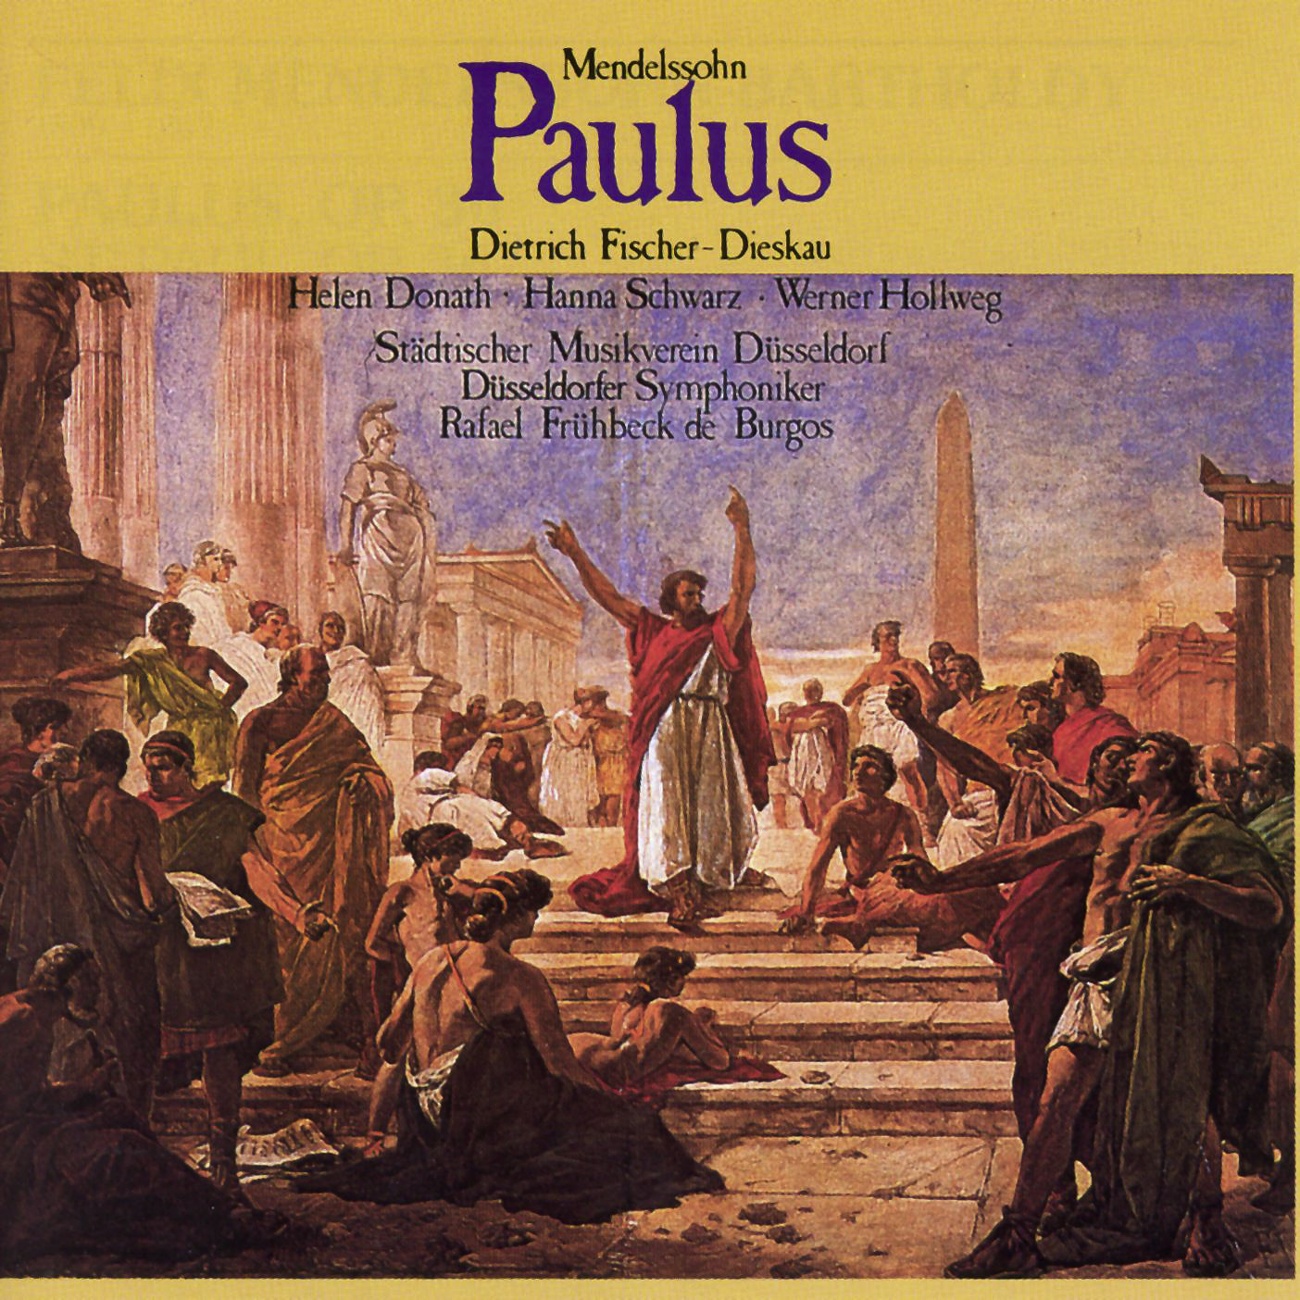 Paulus op. 36  Oratorium in 2 Teilen 1987 Digital Remaster, Erster Teil: Nr. 15  Mache dich auf! Werde Licht! Chor